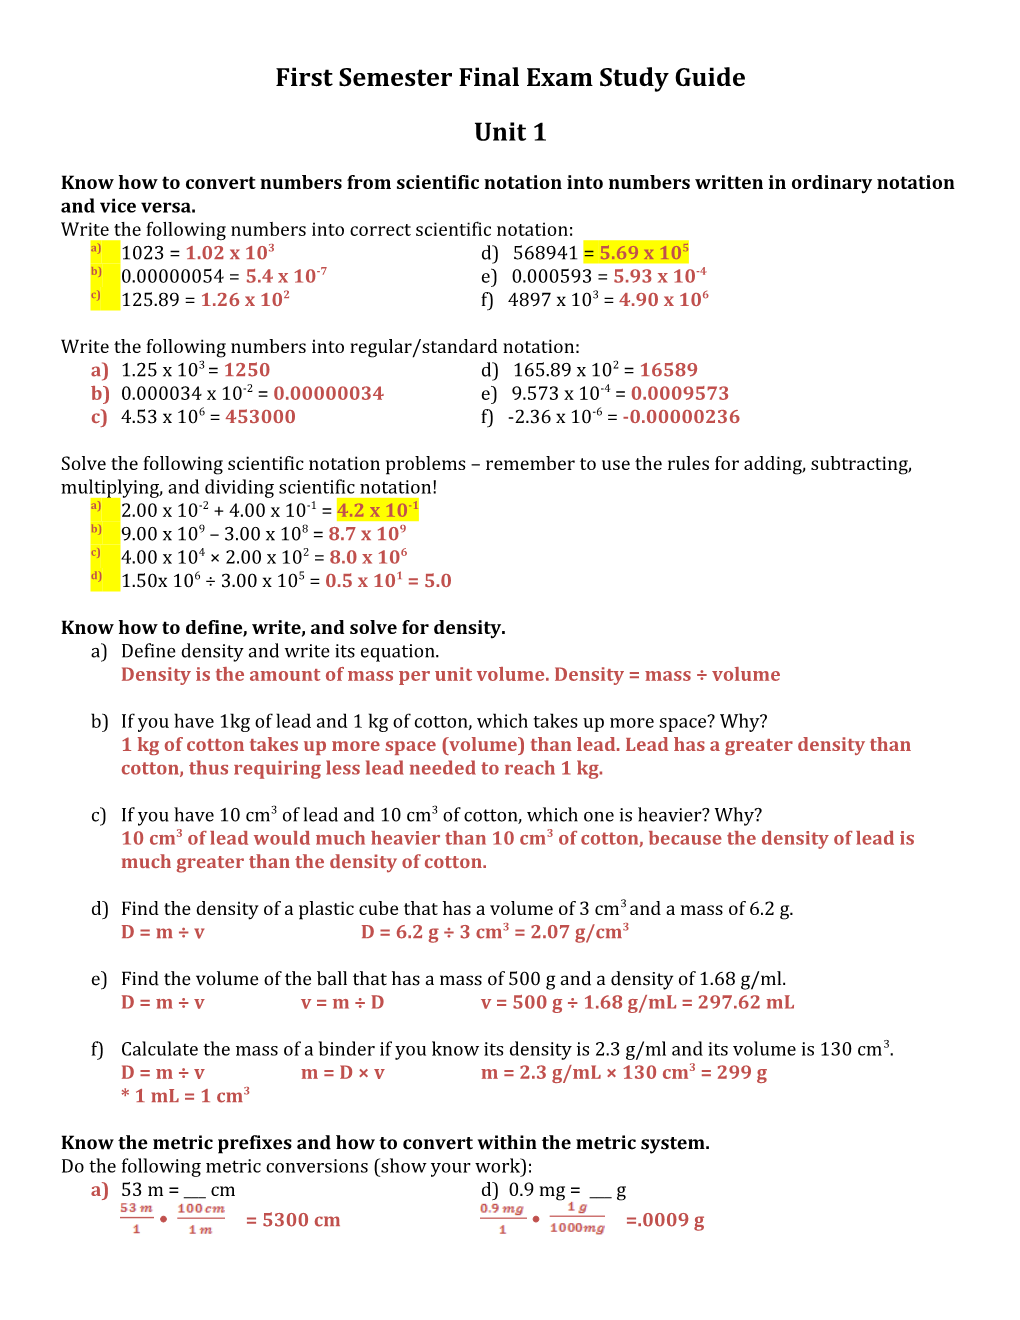 First Semesterfinal Exam Study Guide